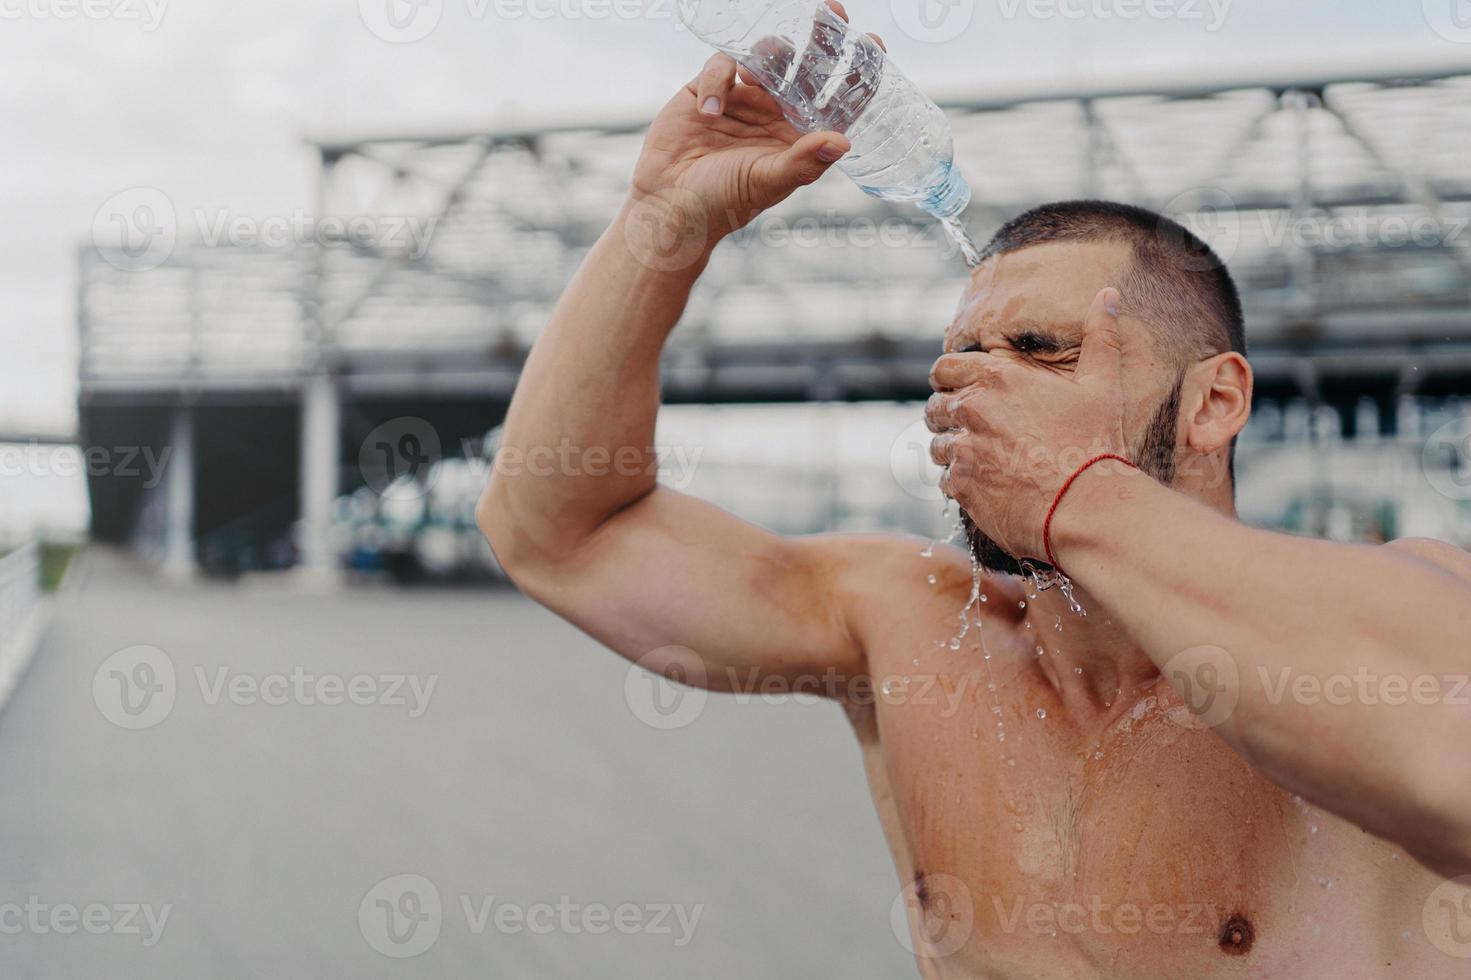 bild av atletisk kille med muskulös kropp häller vatten på sig själv från flaskan, återhämtar sig efter hårt träningspass, känner sig trött och törstig, kyler kroppen med kall vätska, älskar sport. hälsosam livsstil foto